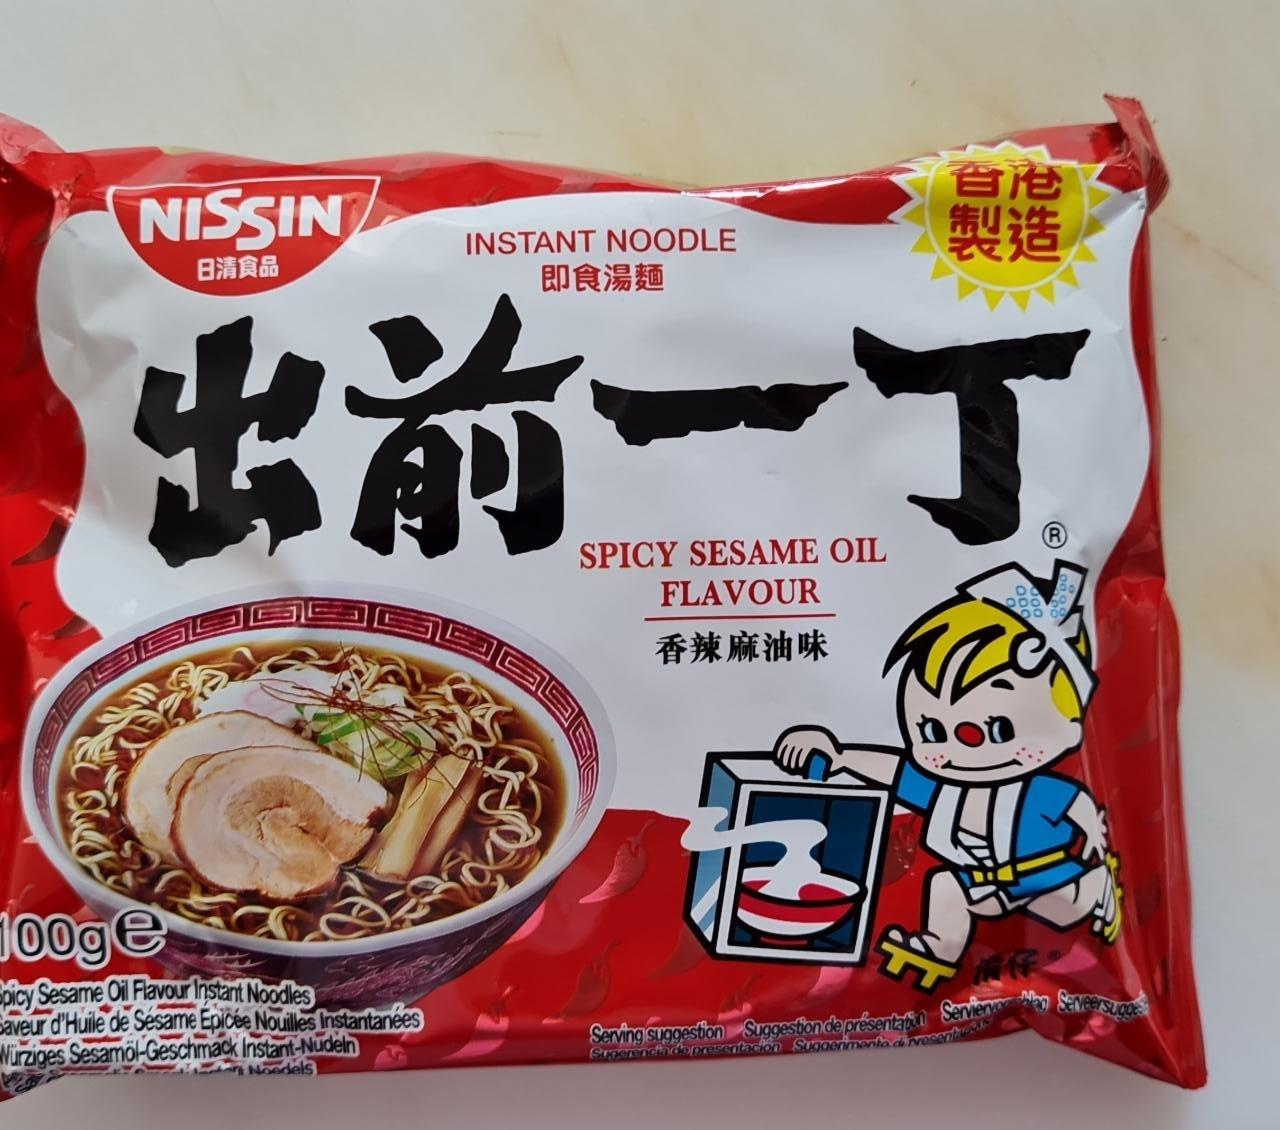 Fotografie - Instant noodles spicy sesame oil flavour Nissin